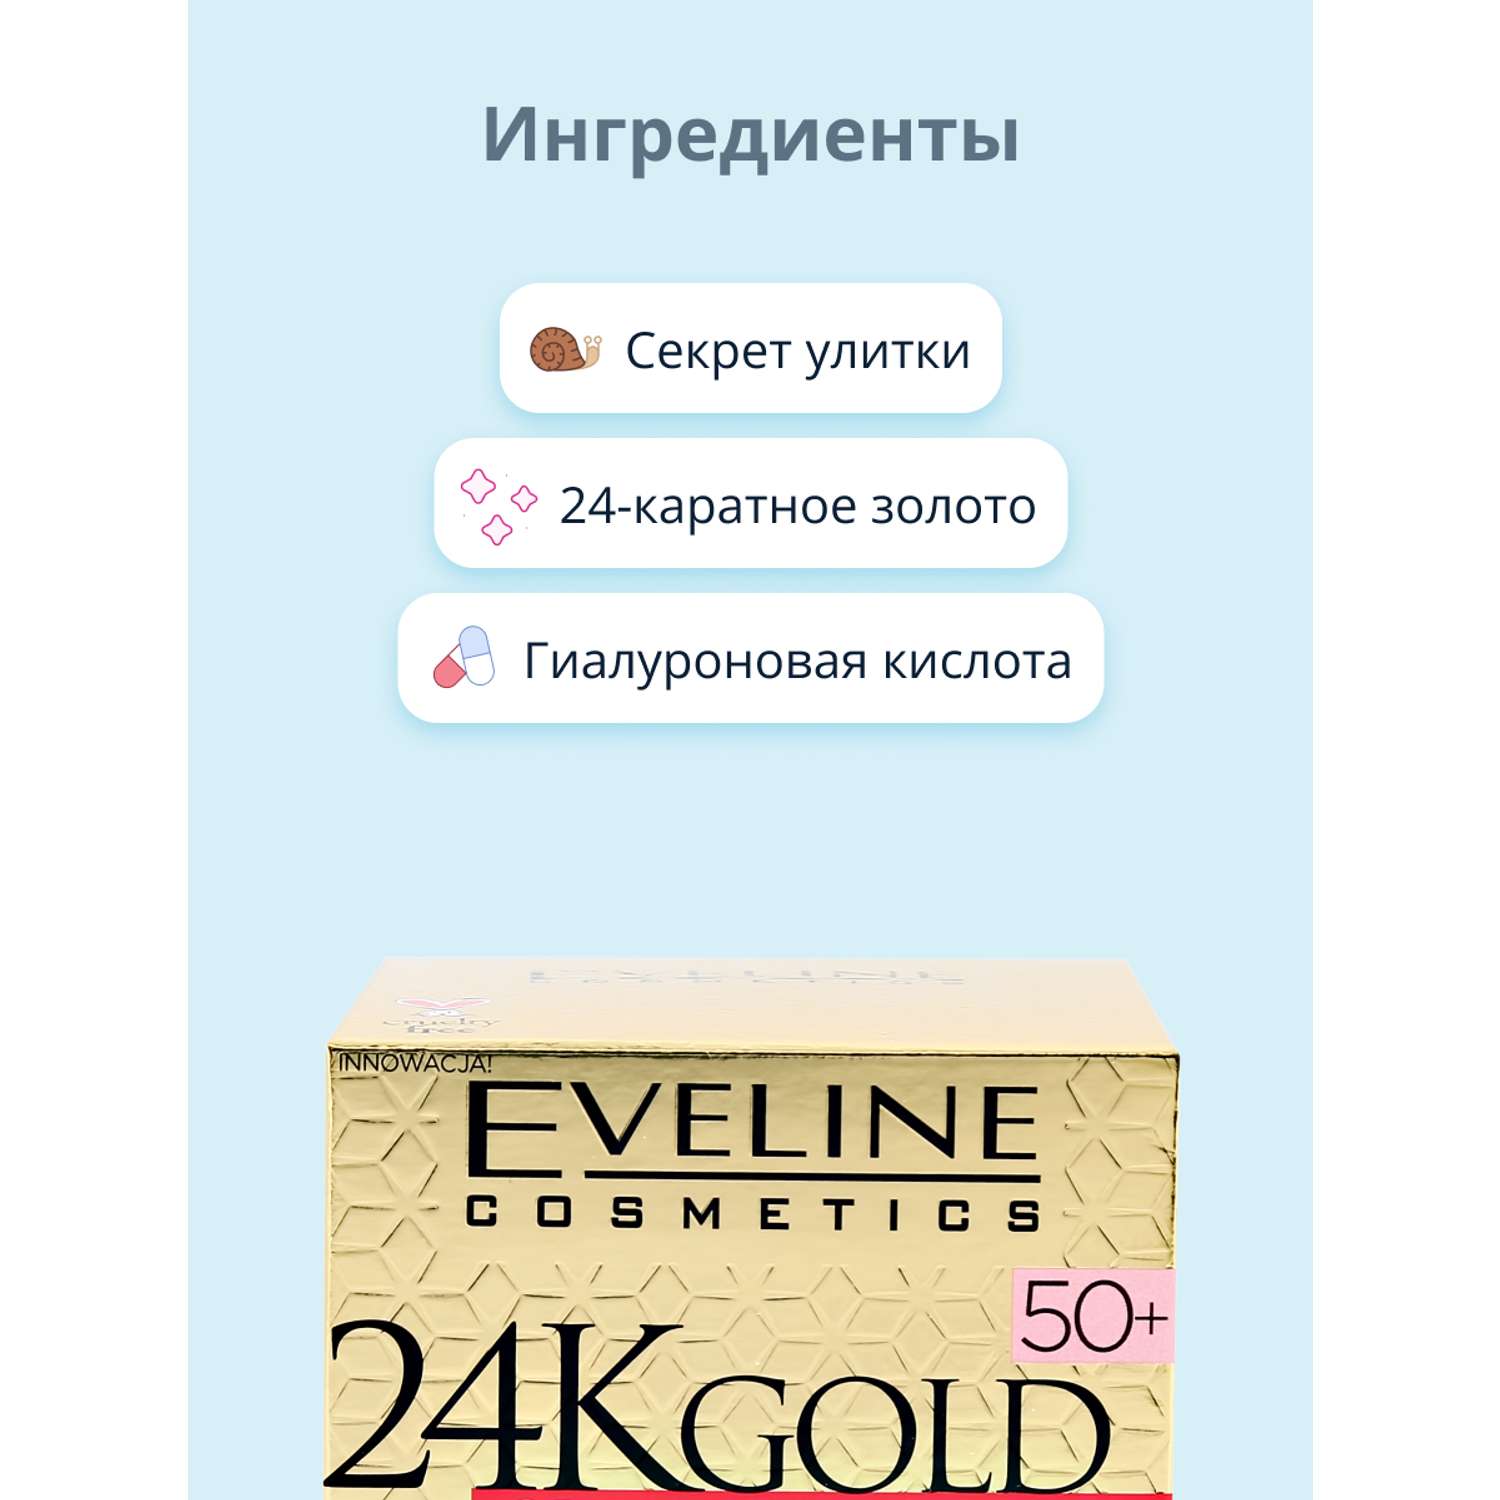 Крем для лица EVELINE 24k gold мультипитательный 50+ против морщин 50 мл - фото 2